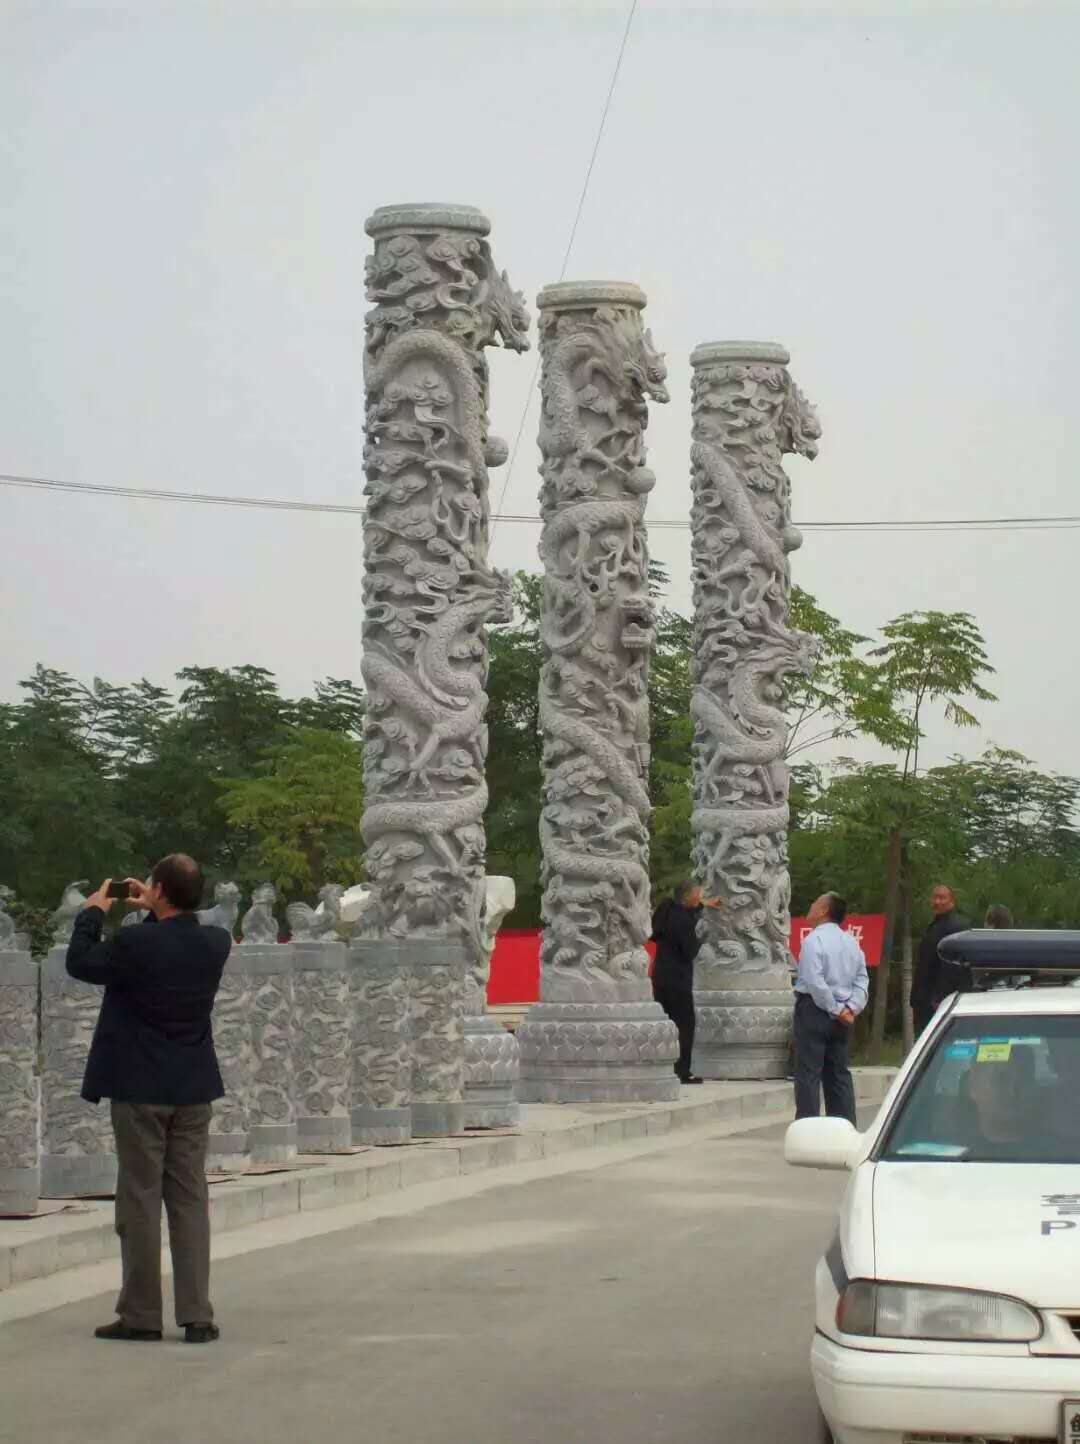 石龙柱雕塑、广场石龙柱、石龙柱安装、景区石龙柱、石龙柱价格、专业雕塑厂家